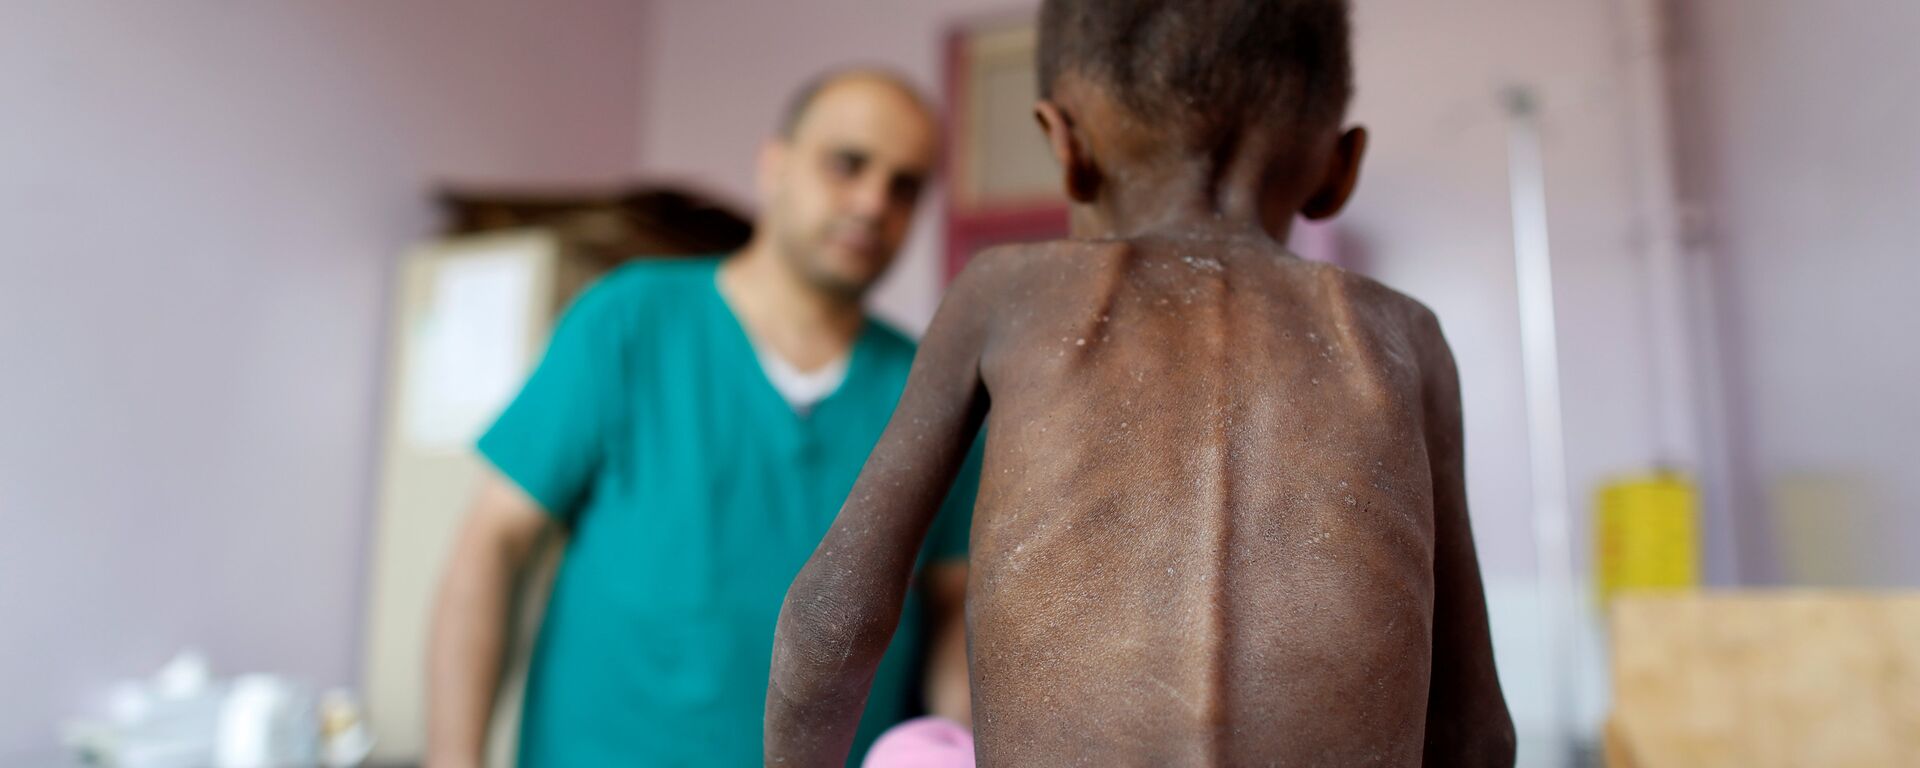 Yemen'de yetersiz beslenme nedeniyle sağlık sorunları yaşayan bir çocuk - Sputnik Türkiye, 1920, 14.04.2022